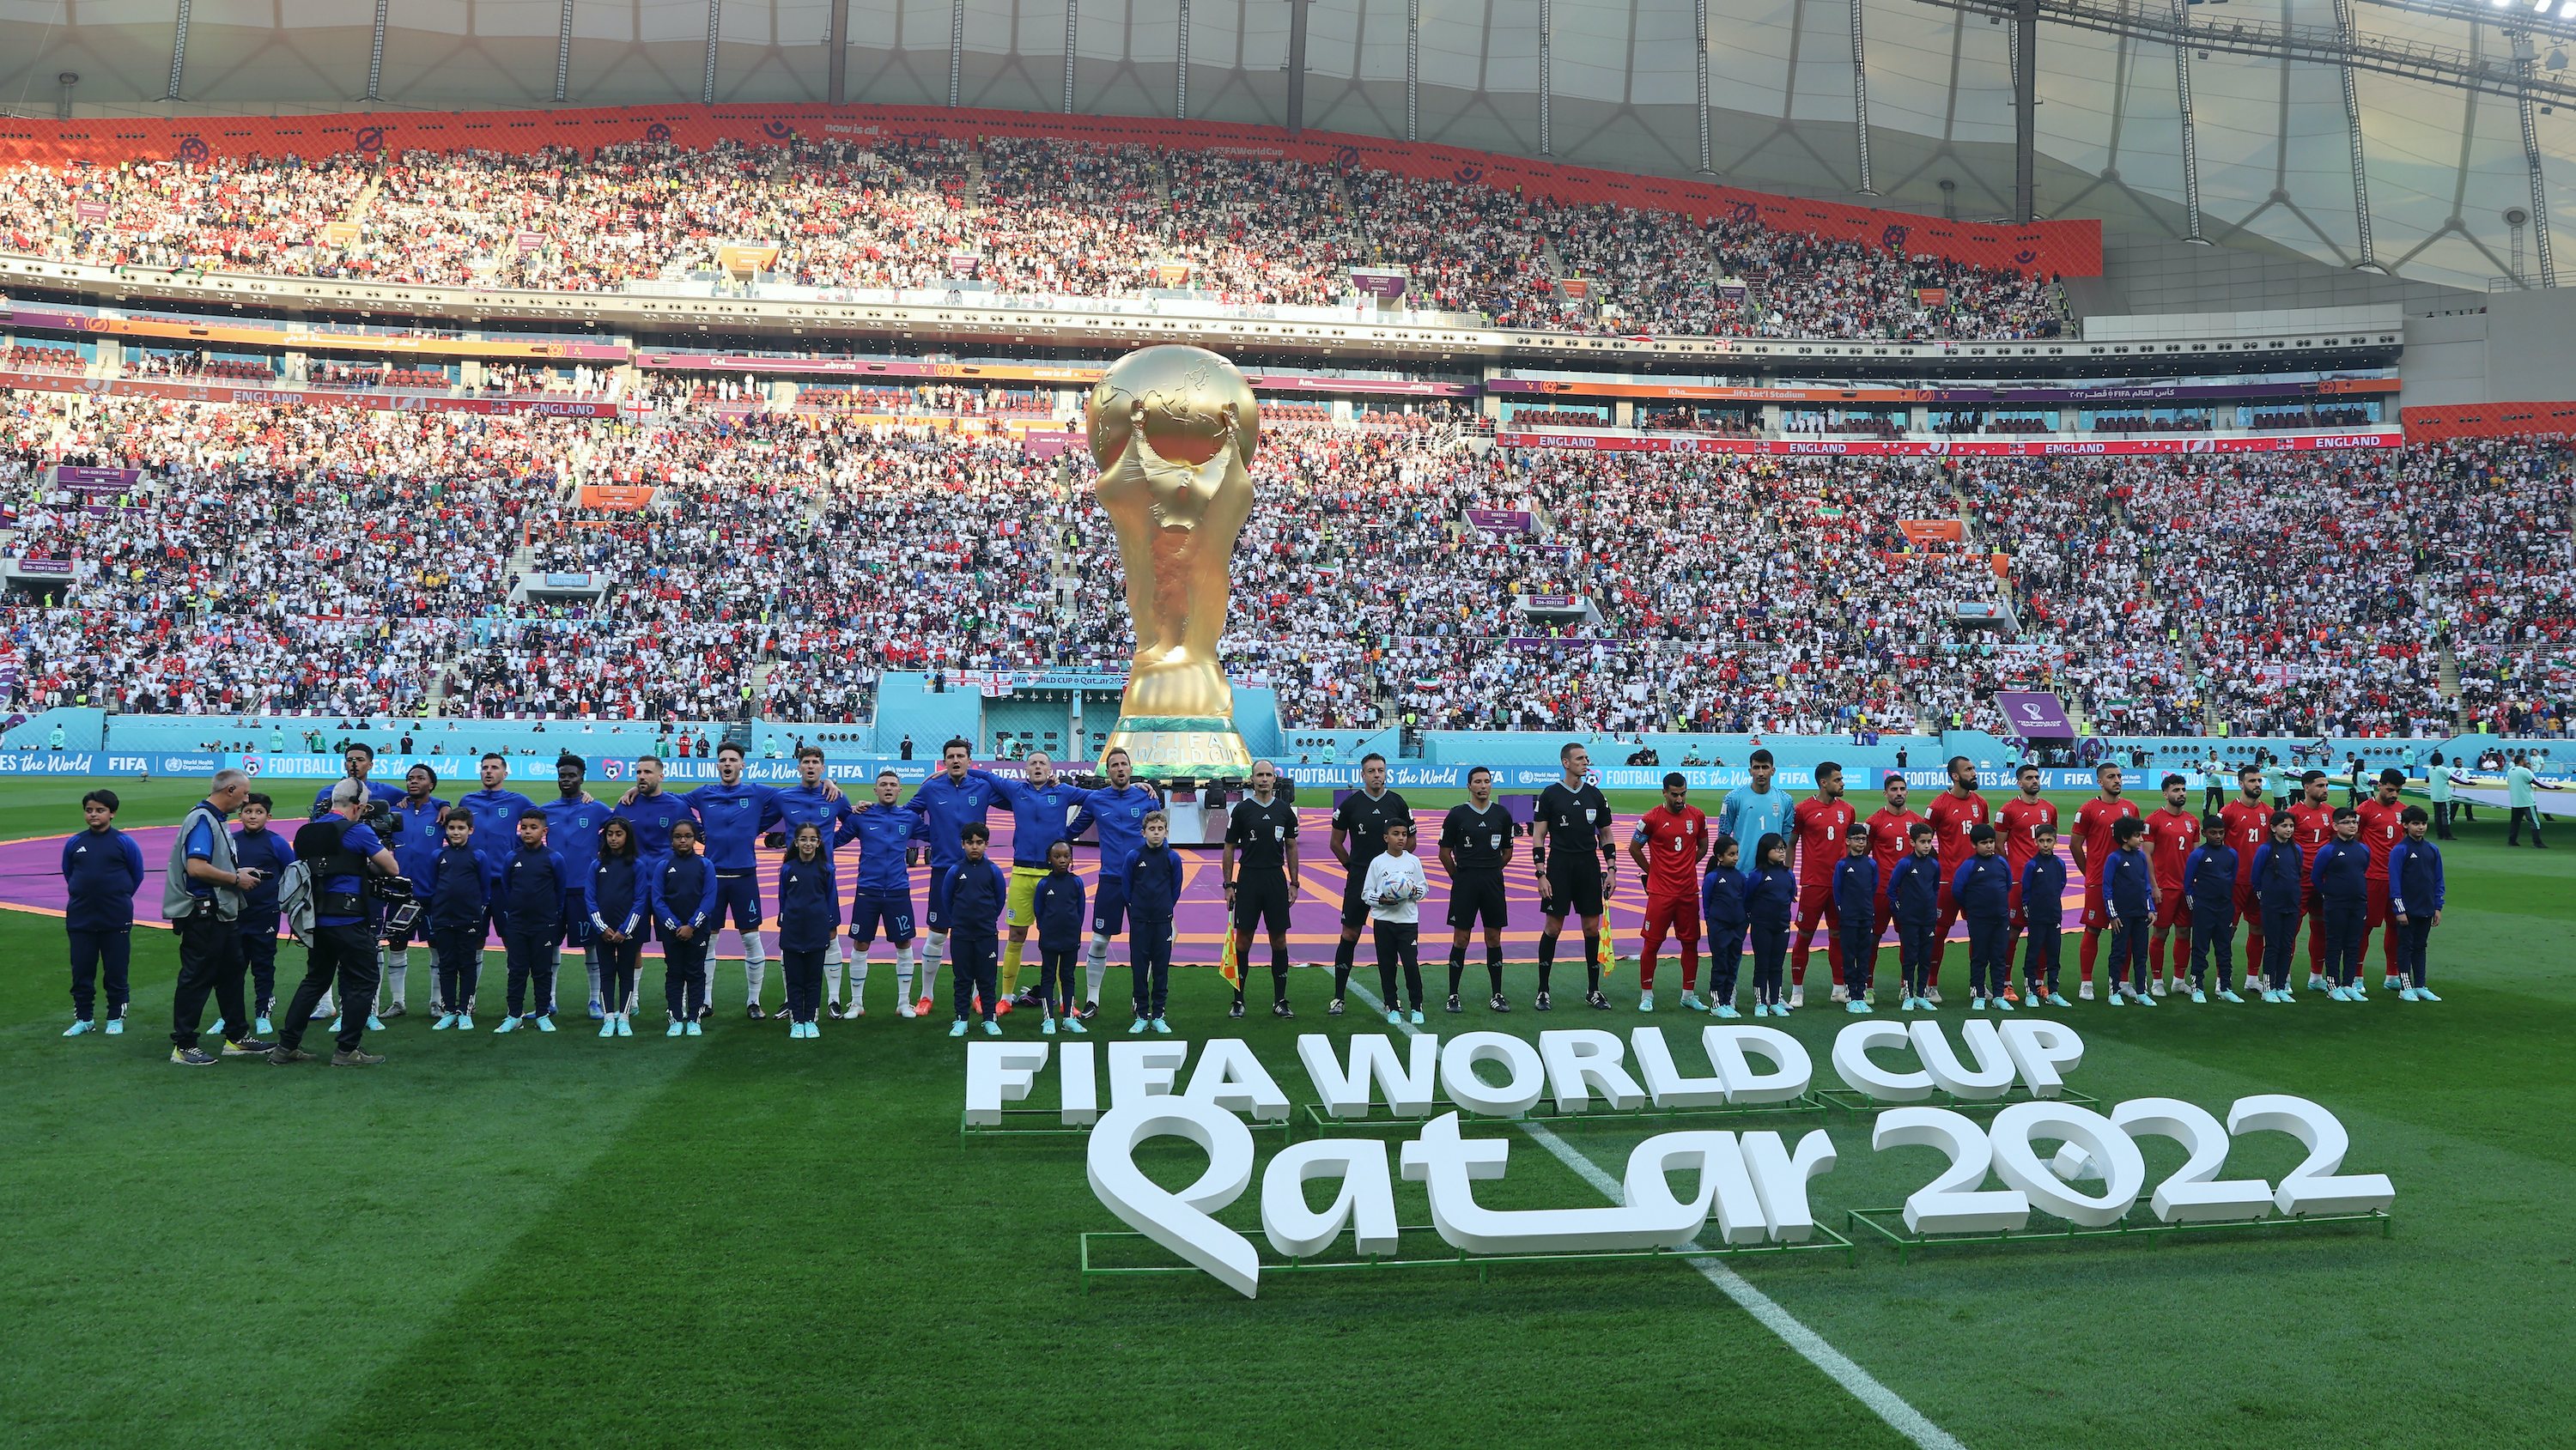 O Iraniano E O Russo Ventilam Na Zona Do Fã No Campeonato Do Mundo